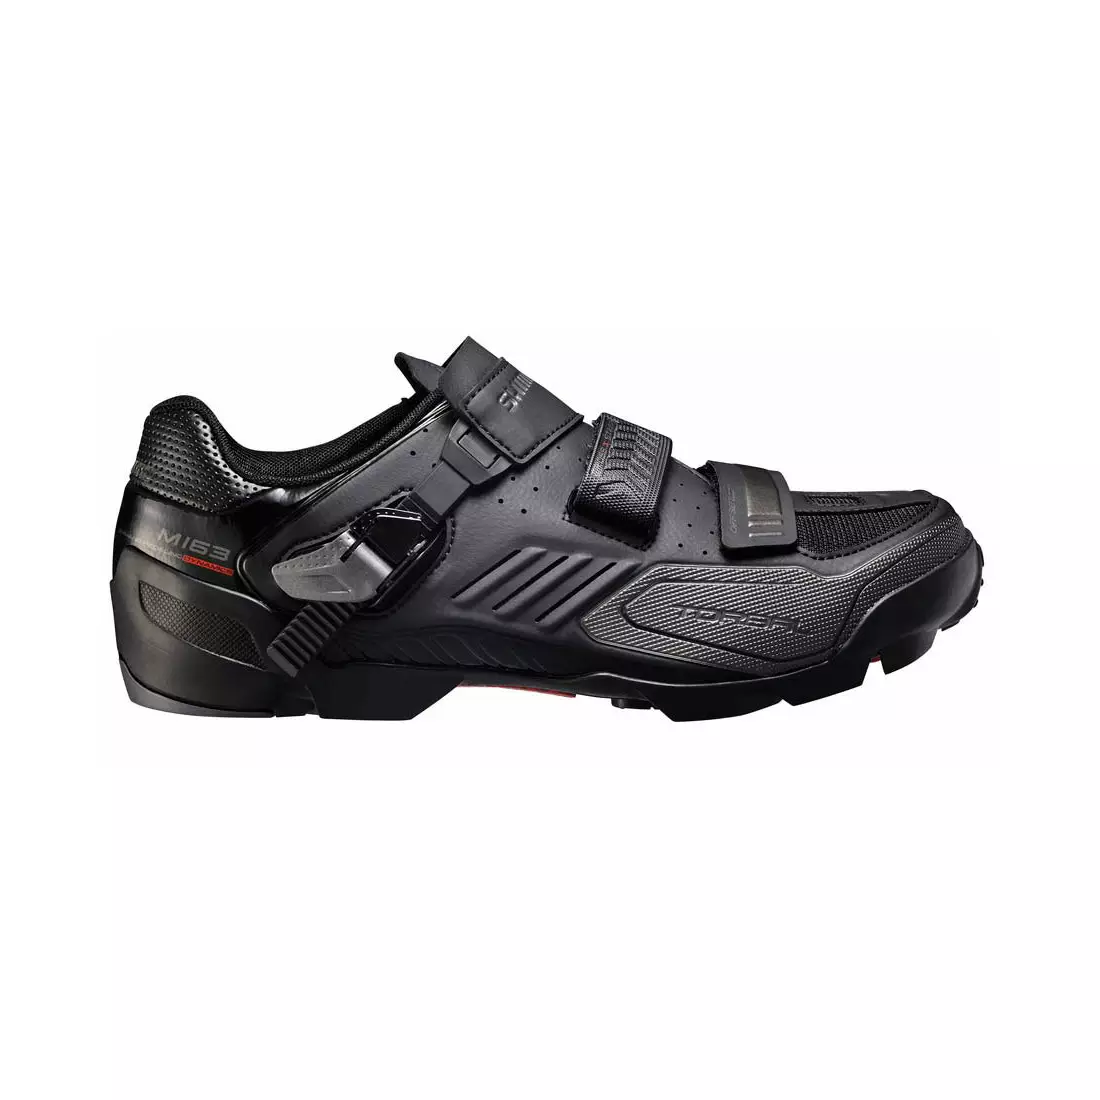 SHIMANO SH-M163 Enduro/Trial/MTB kerékpáros cipő - fekete